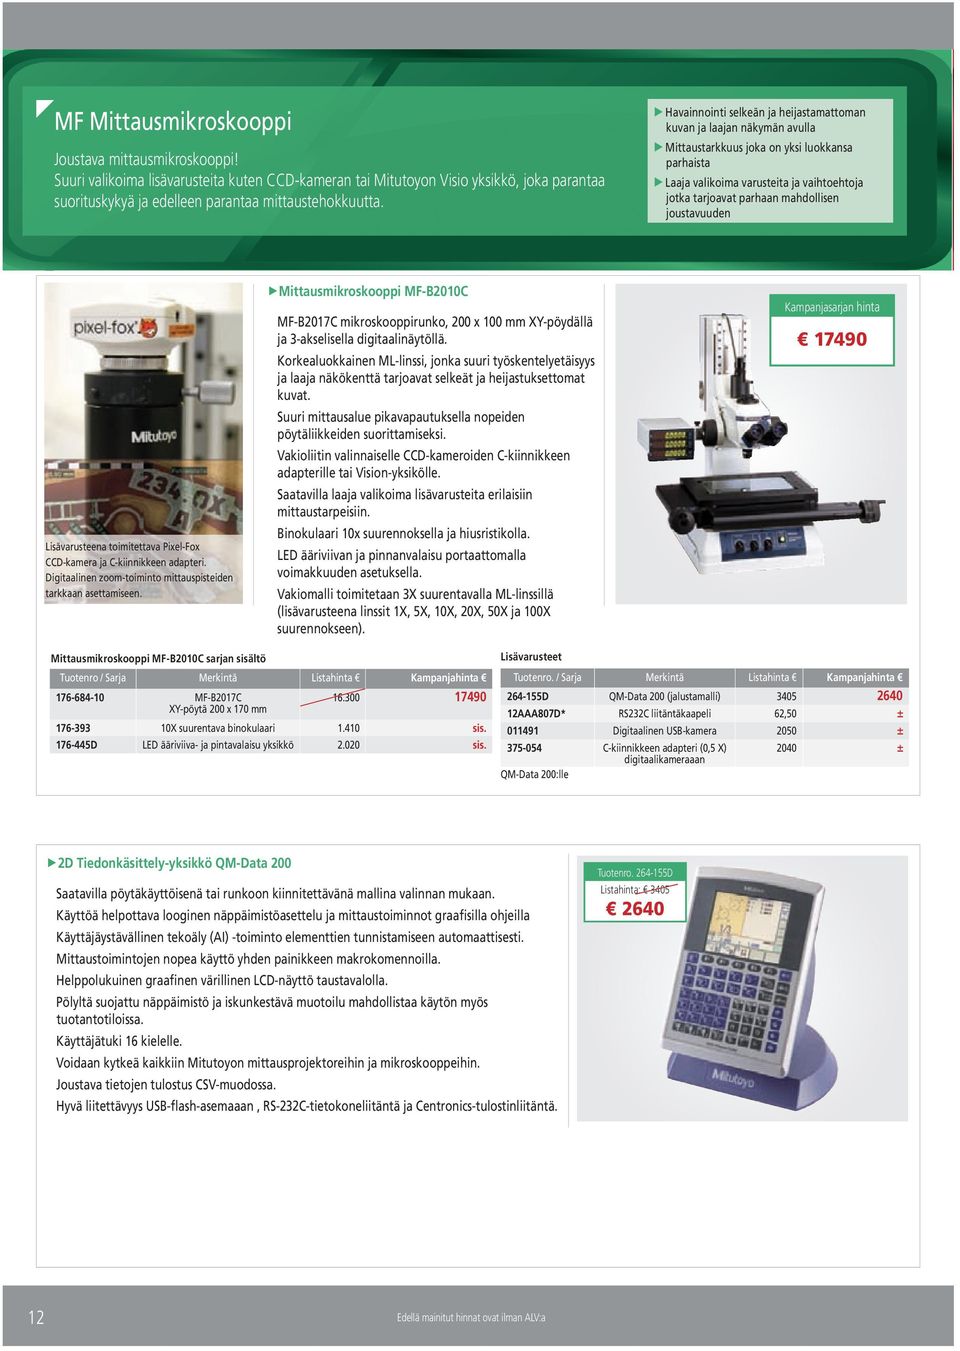 Laaja valikoima varusteita ja vaihtoehtoja jotka tarjoavat parhaan mahdollisen joustavuuden Mittausmikroskooppi MF-B21C Kampanjasarjan hinta MF-B217C mikroskooppirunko, 2 x 1 mm XY-pöydällä ja